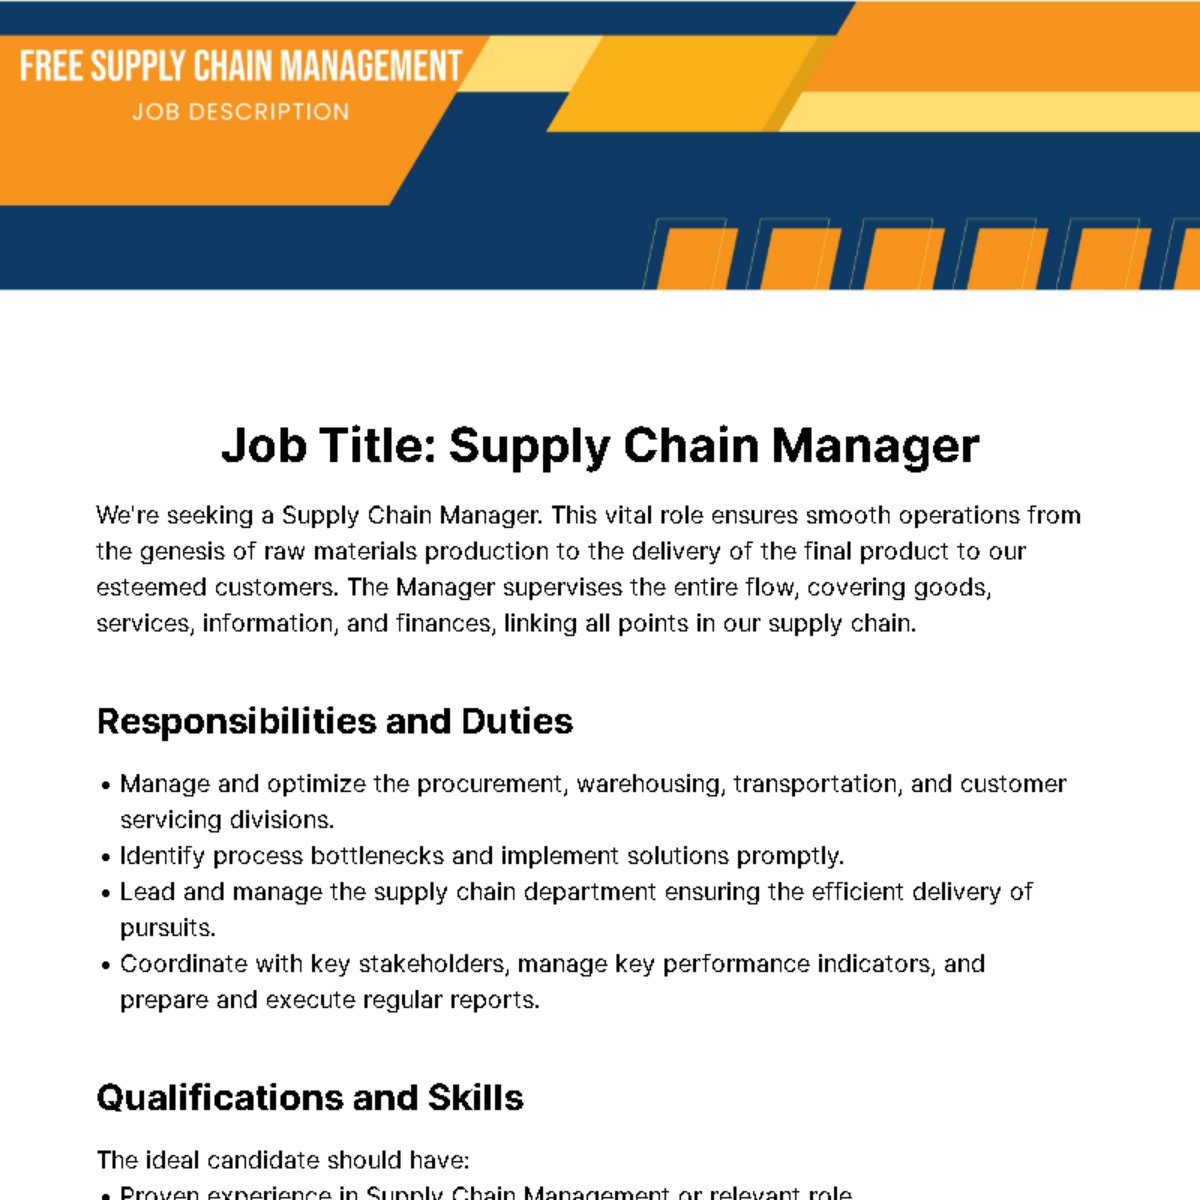 Supply Chain Management Job Description Template